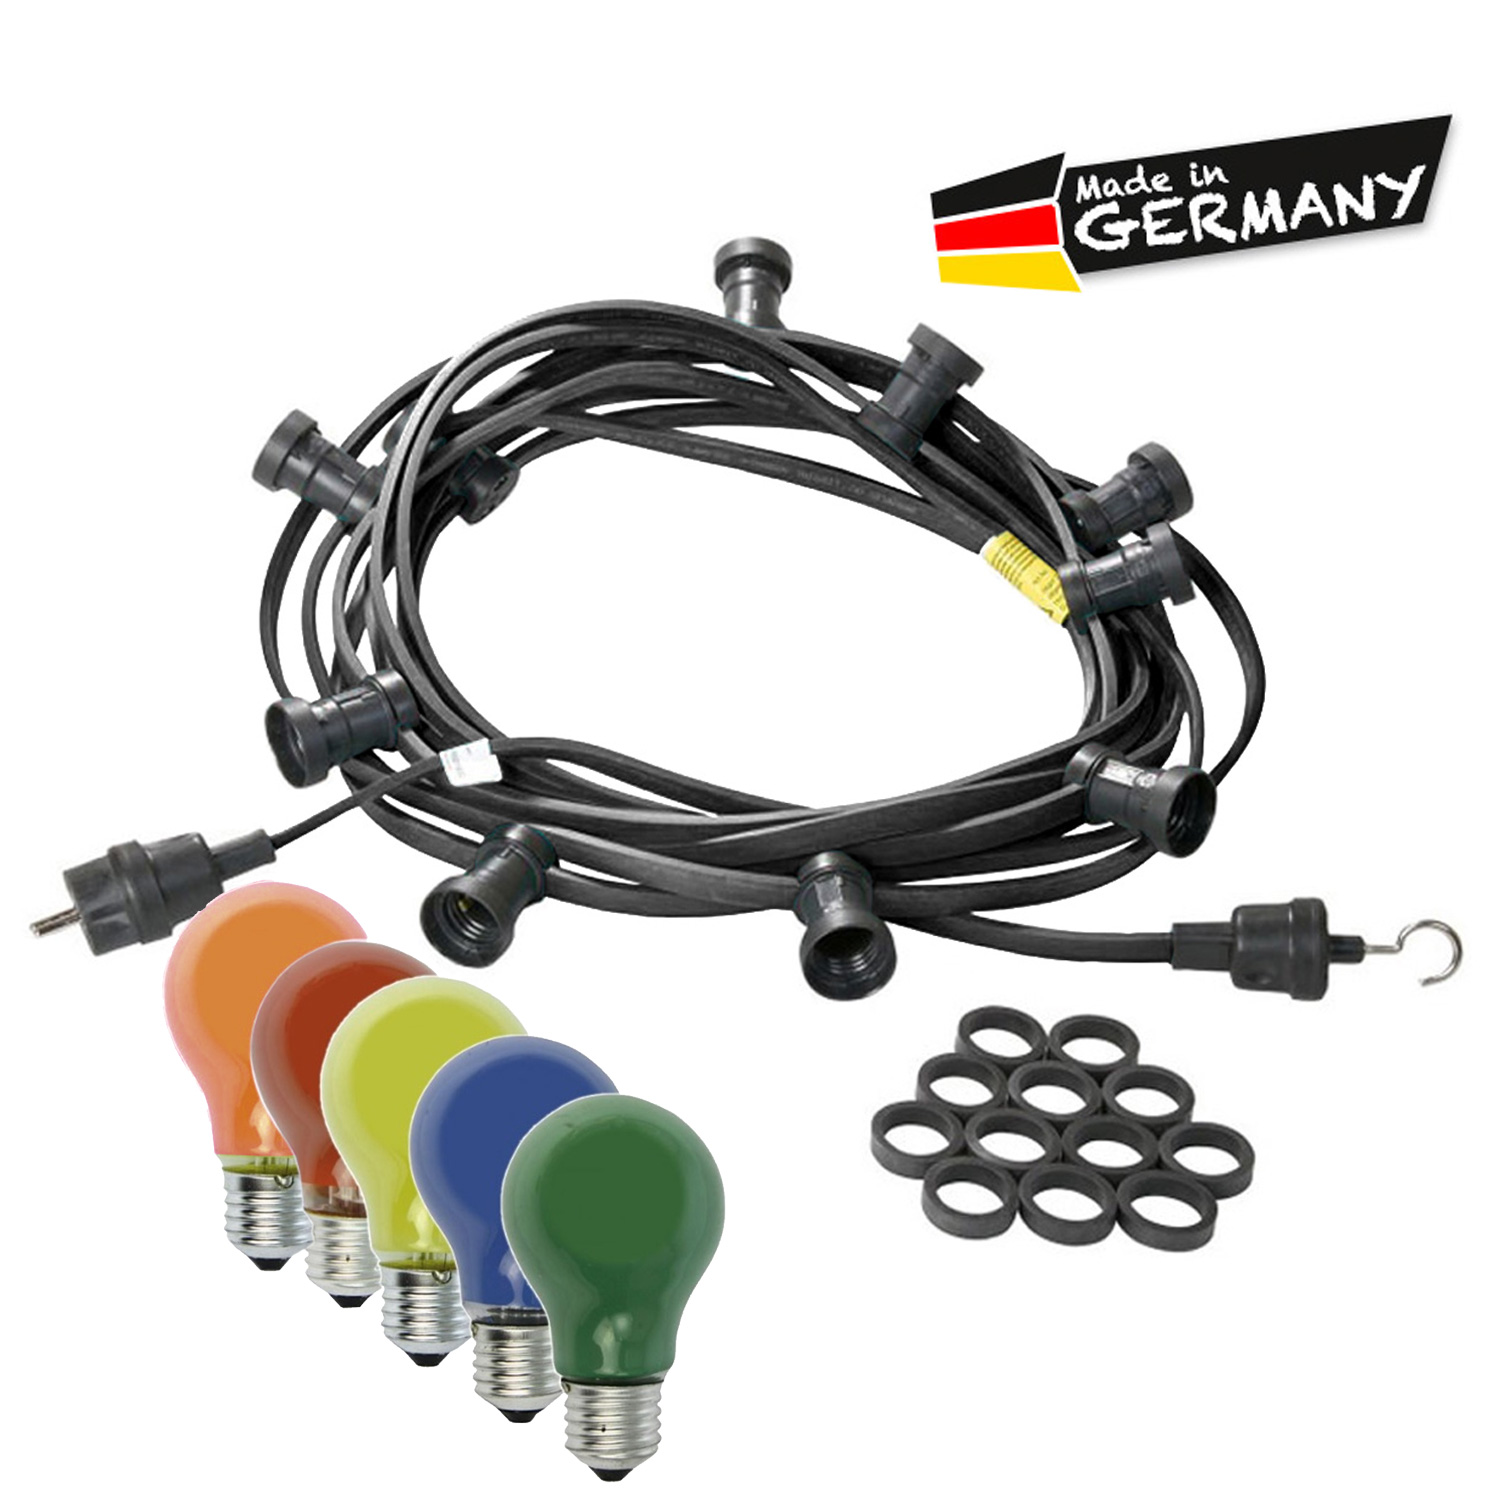 Illu-/Partylichterkette 10m - Außenlichterkette schwarz - Made in Germany - 10 bunte 25W Glühlampen